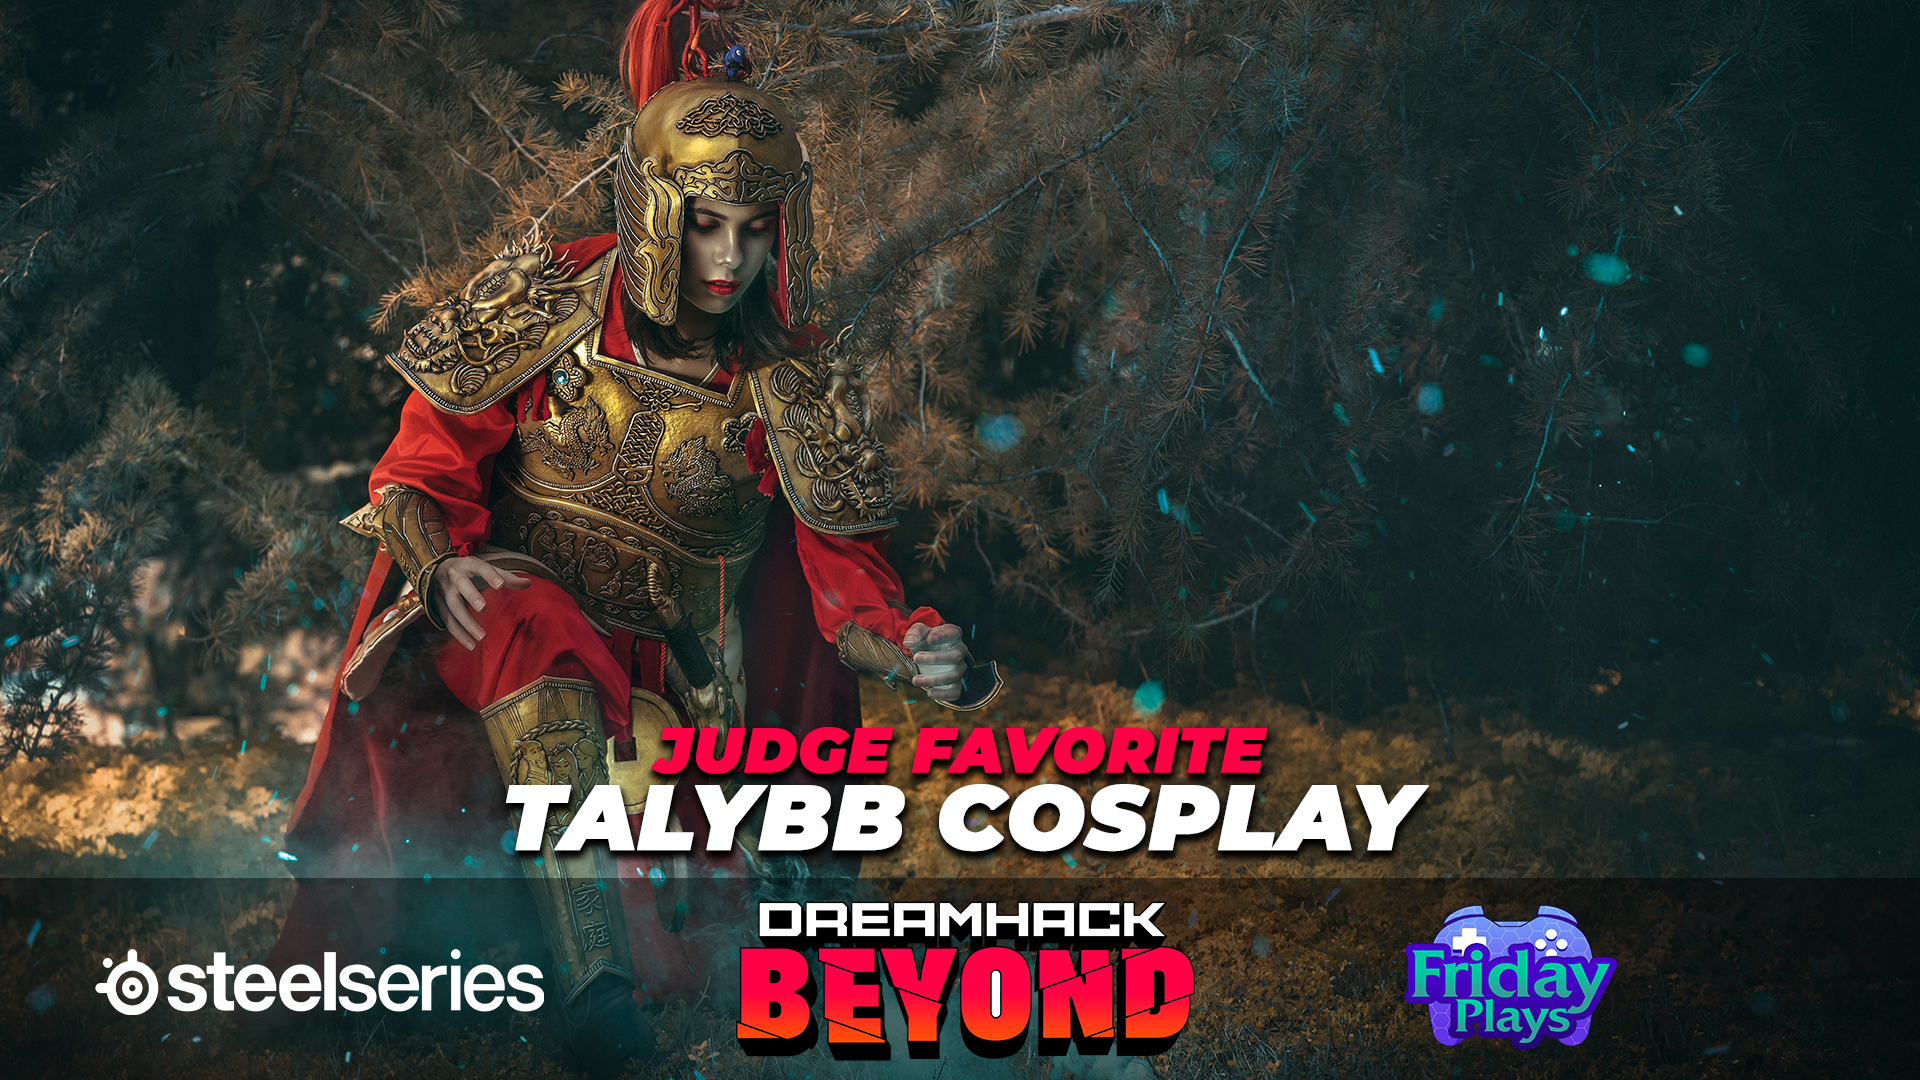 Judge favorite Talybb